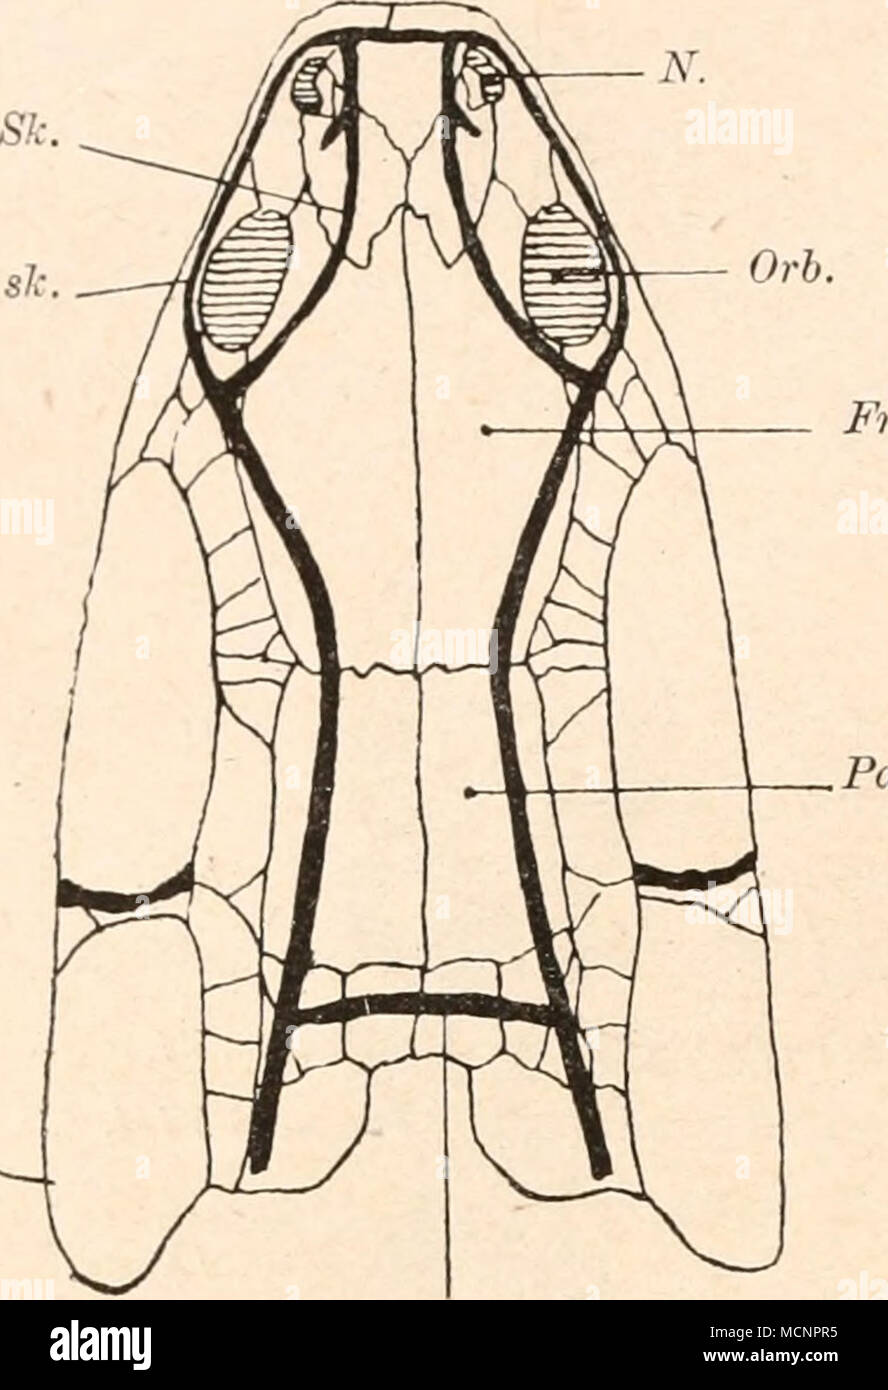 . Fig. 29. Die Schleimkanäle des Schädels von Polypterus. (Nach G. Baur und R. H. Traquair, aus R. L. Moodie.) N. = , Nasenöffnung. Orb. = Orbita. Fr. = Frontale. Pa. = Parietale. Sk. = Seitenkanal. (Vgl. Fig. 26.) 1 Roy L. Moodie, The Lateral Line System in Extinct Amphibia. The Journal of Morphology, Vol. XIX, 1908, p. 511. Stock Photo